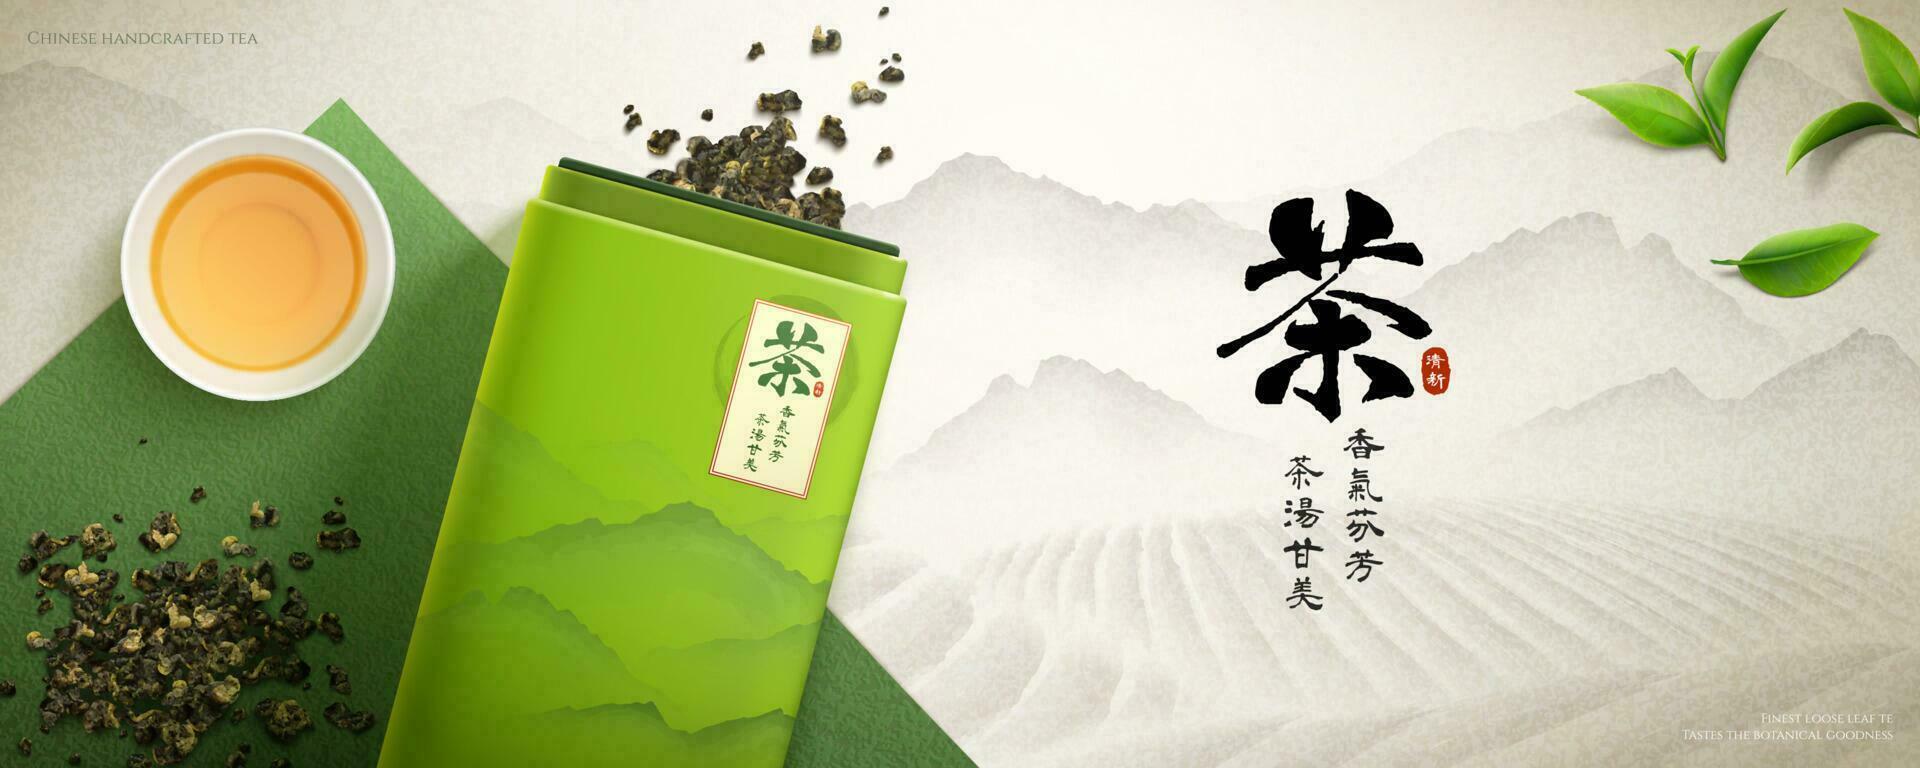 3d chinês chá bandeira de Anúncios. ilustração do chá pacote e espalhados solto folhas com chá plantação dentro fundo. chinês tradução, chá do aromático folhas e doce sabores vetor